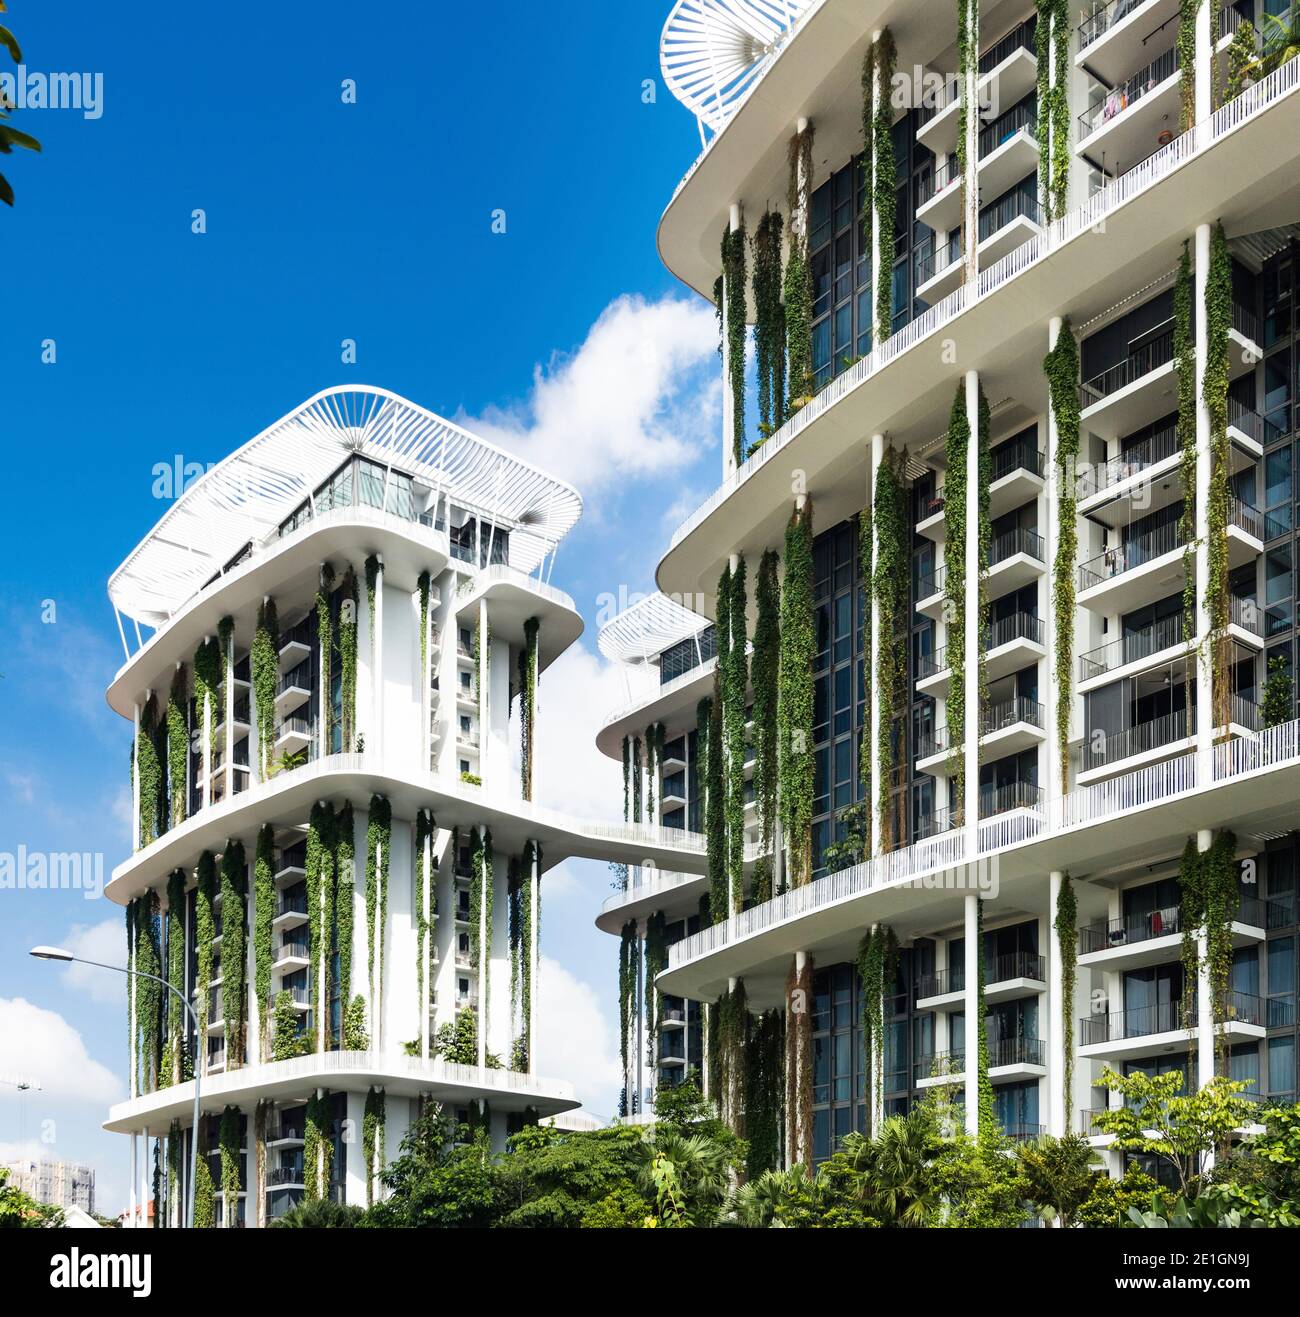 Vue extérieure de l'immeuble d'appartements Tembusu à Singapour avec une façade biologique vivante. Banque D'Images